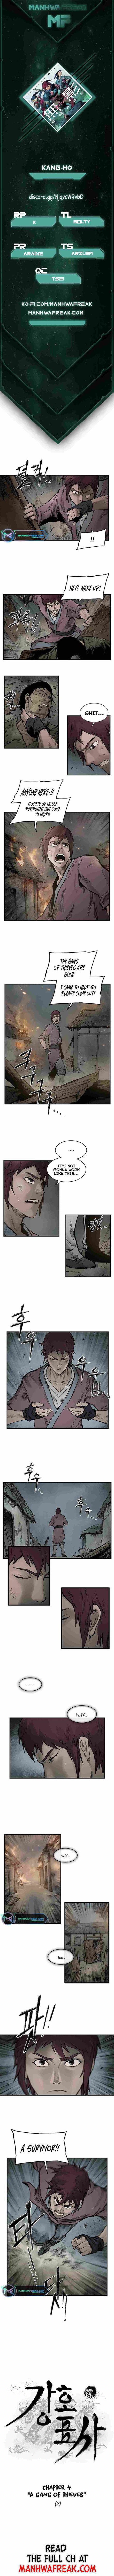 Kang Ho - Page 2